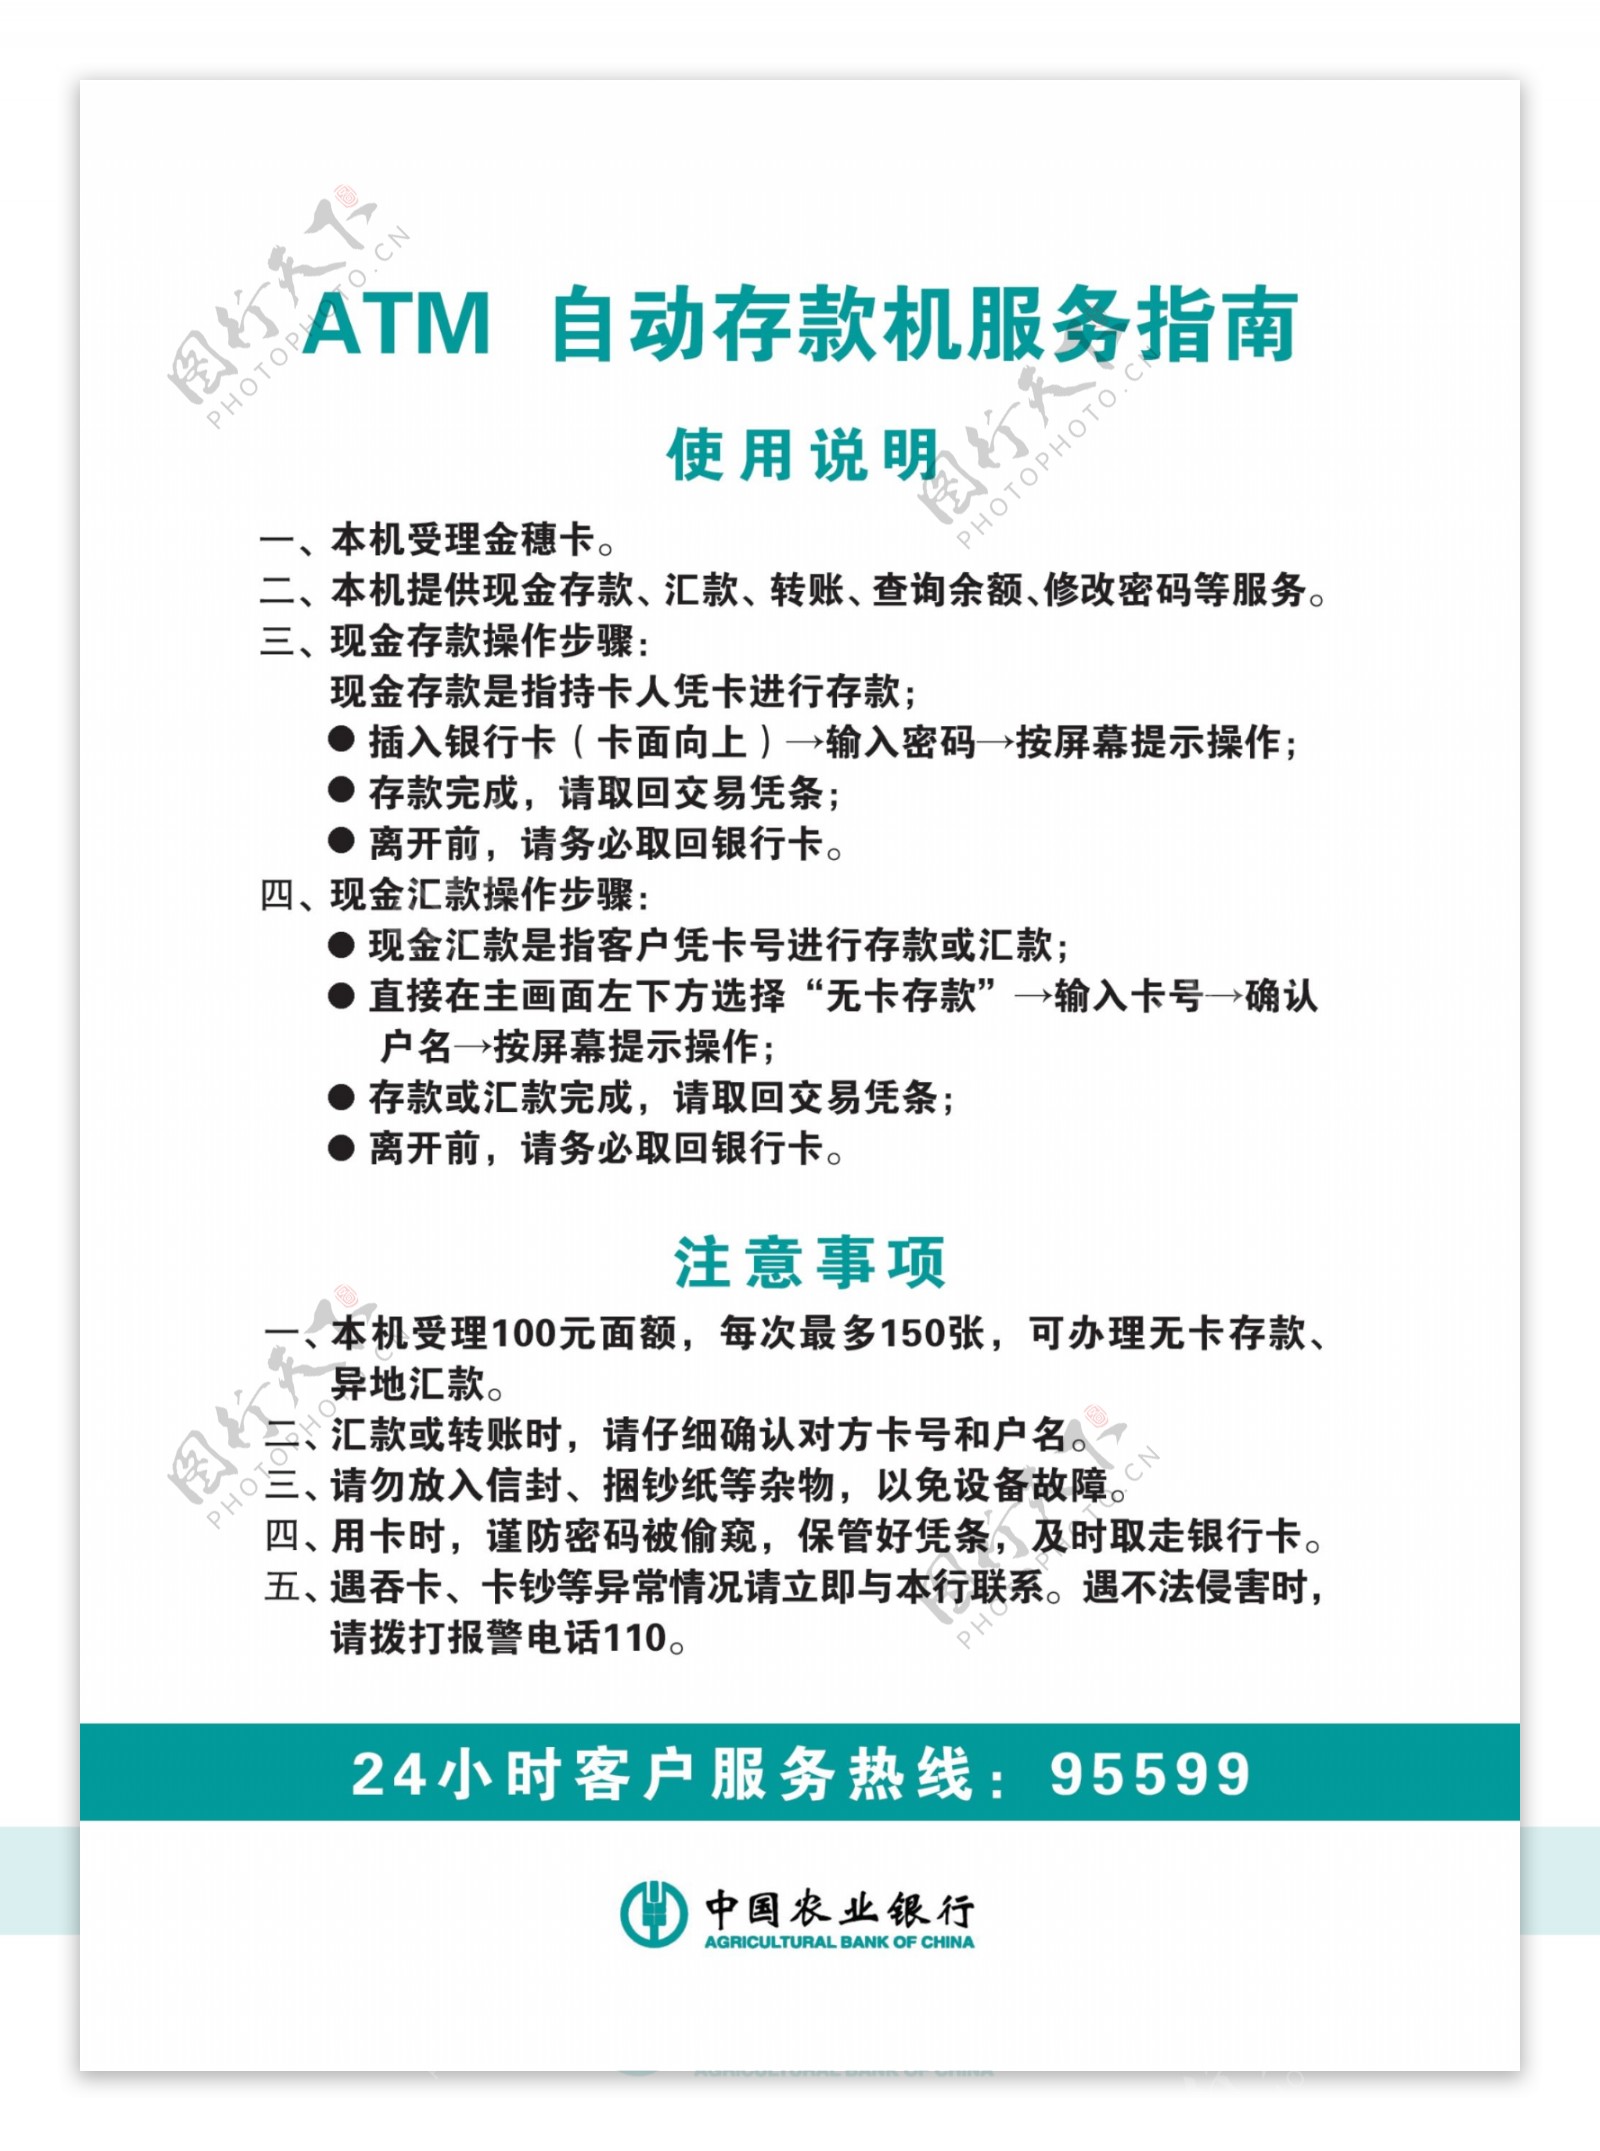 ATM自动存款机服务指南